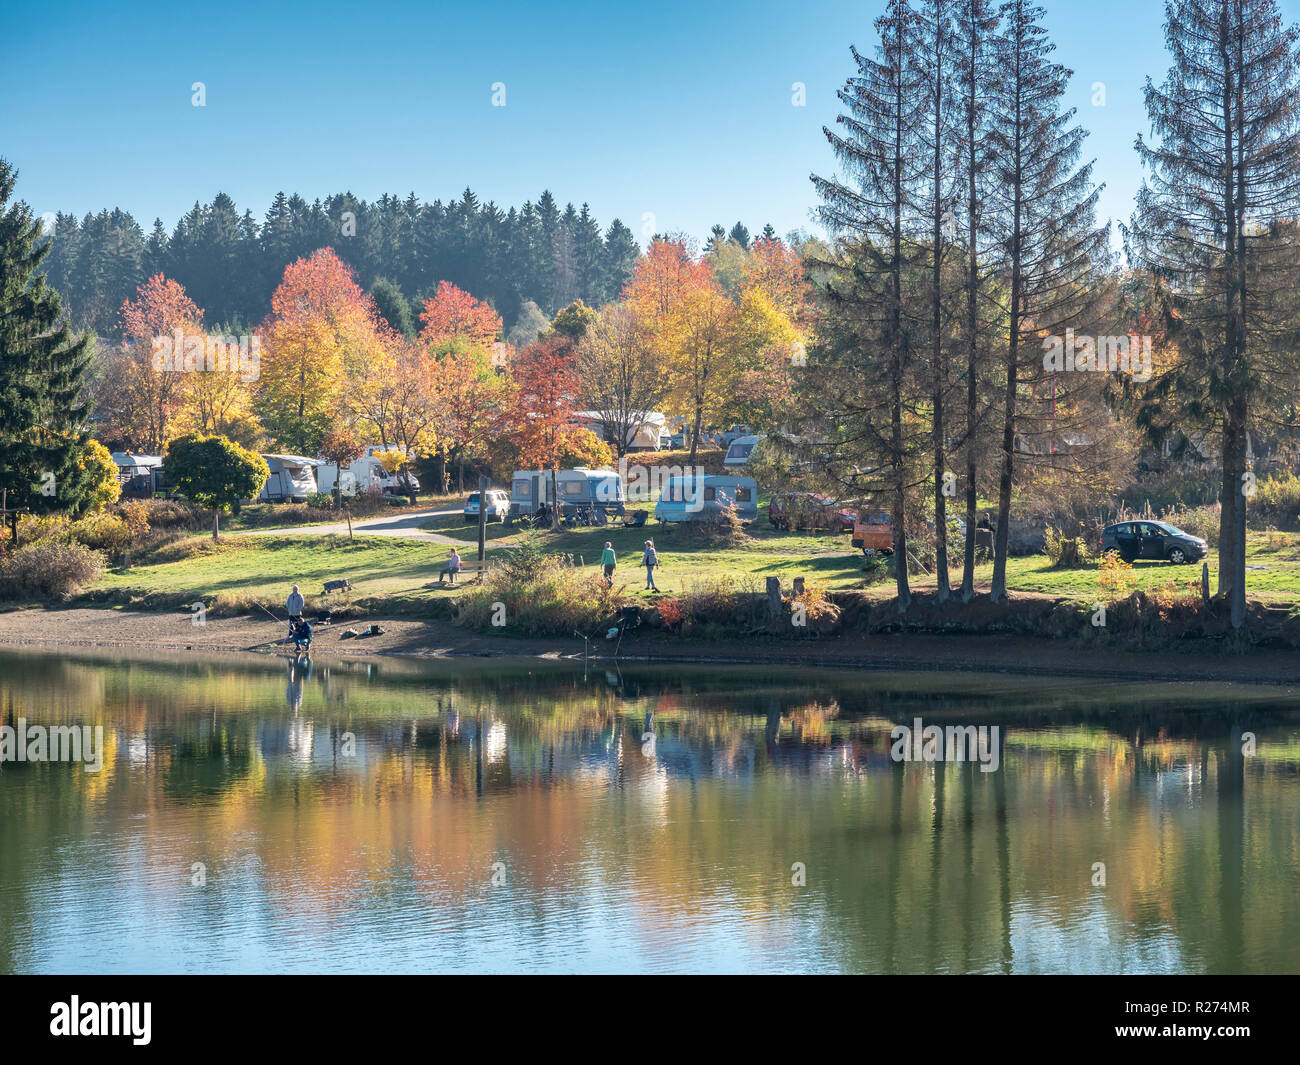 Campingplatz am Pixhaier See, Wohnwagen, Leute gehen Angeln im Herbst, in  der Nähe von Clausthal-Zellerfeld, Harz, Deutschland Stockfotografie - Alamy